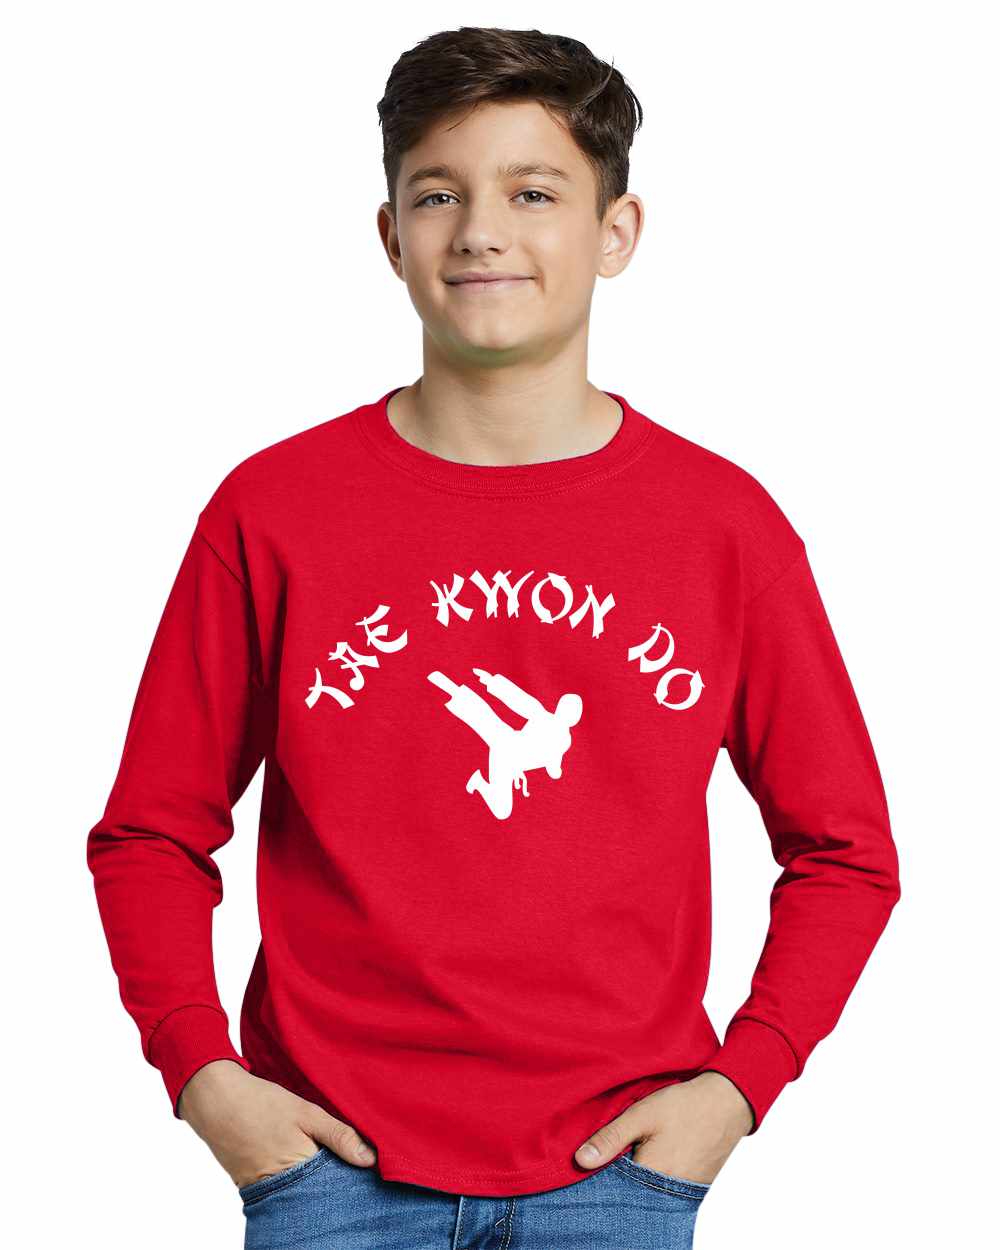 TAE KWON DO on Youth Long Sleeve Shirt (#748-203)